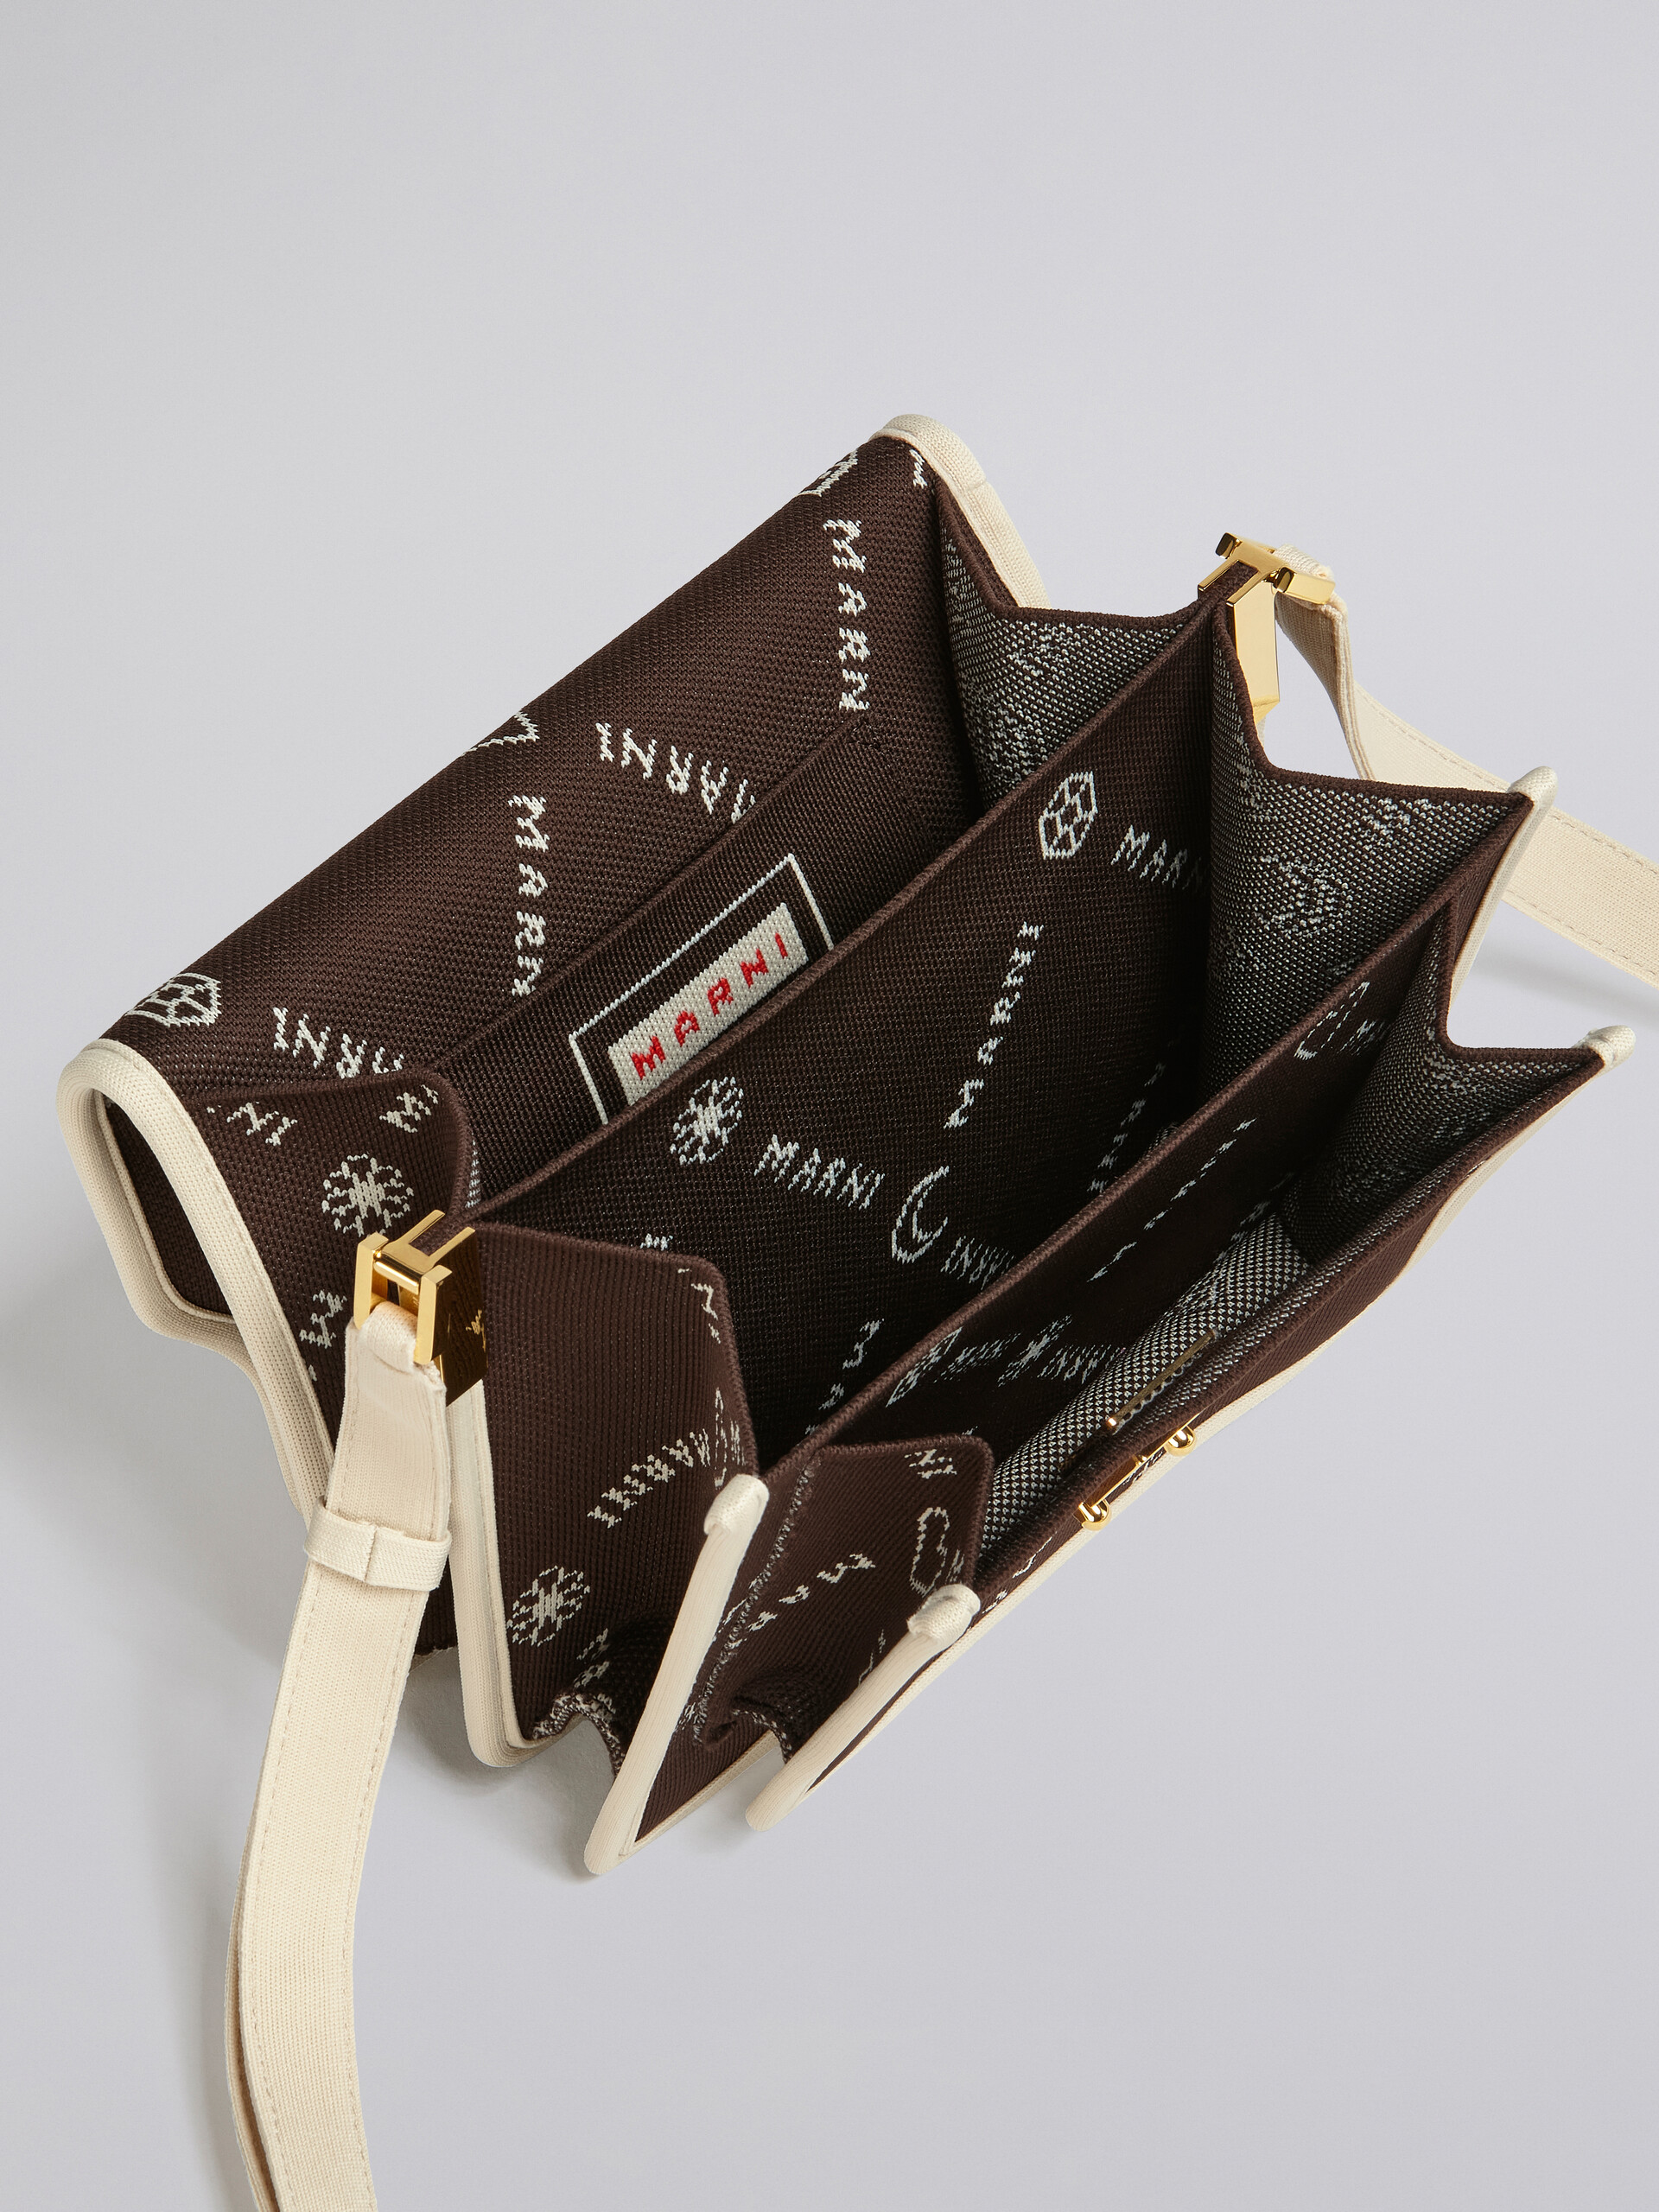 TRUNK SOFT medium bag in brown Marnigram jacquard - Shoulder Bags - Image 4